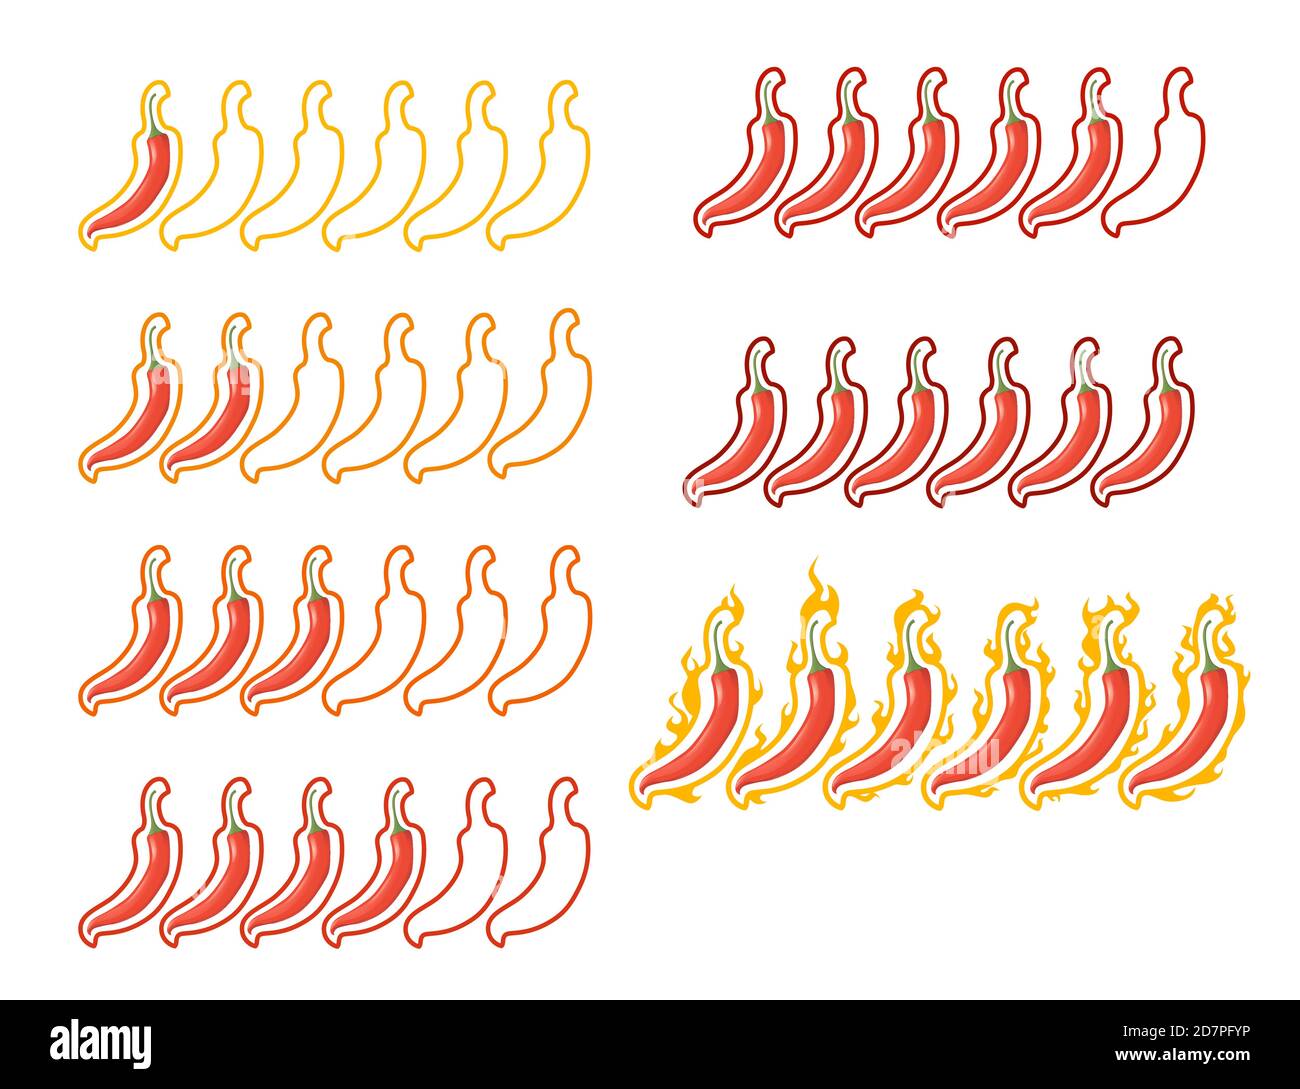 Echelle de chaleur de poivre de Scoville basse à plat chaud très épicé illustration vectorielle sur fond blanc Illustration de Vecteur